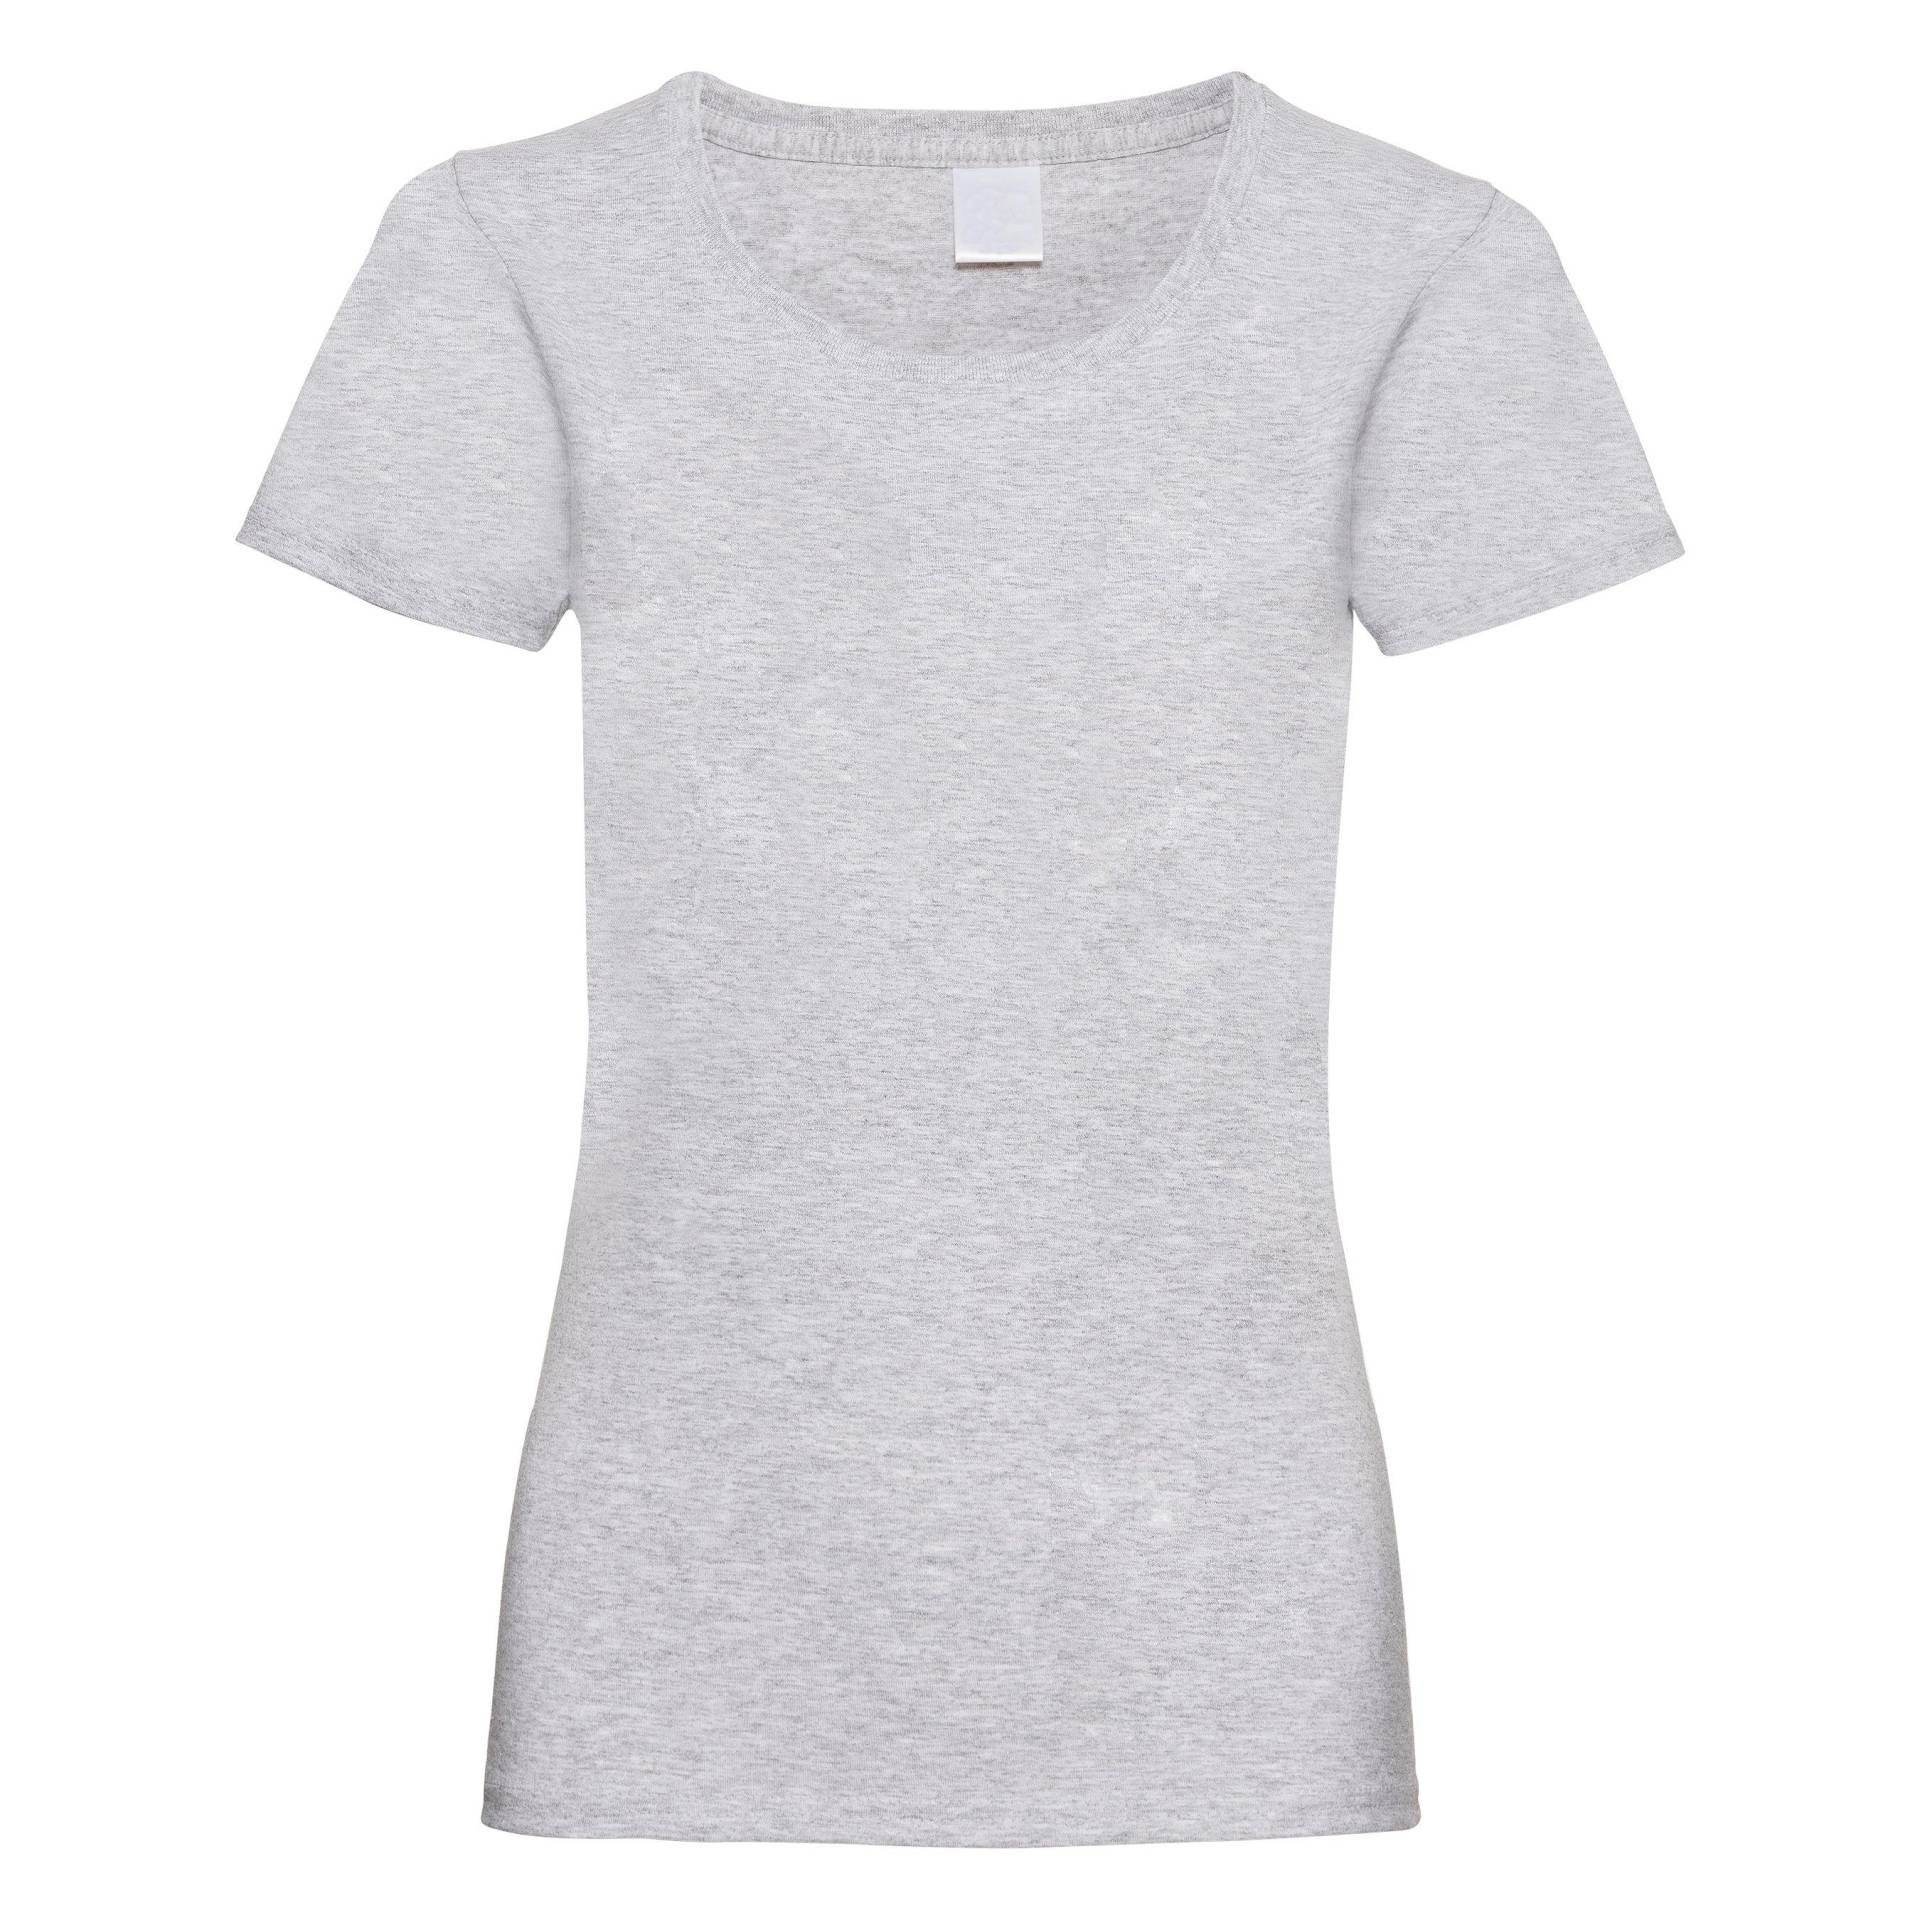 Value Tshirt Damen Taubengrau M von Universal Textiles